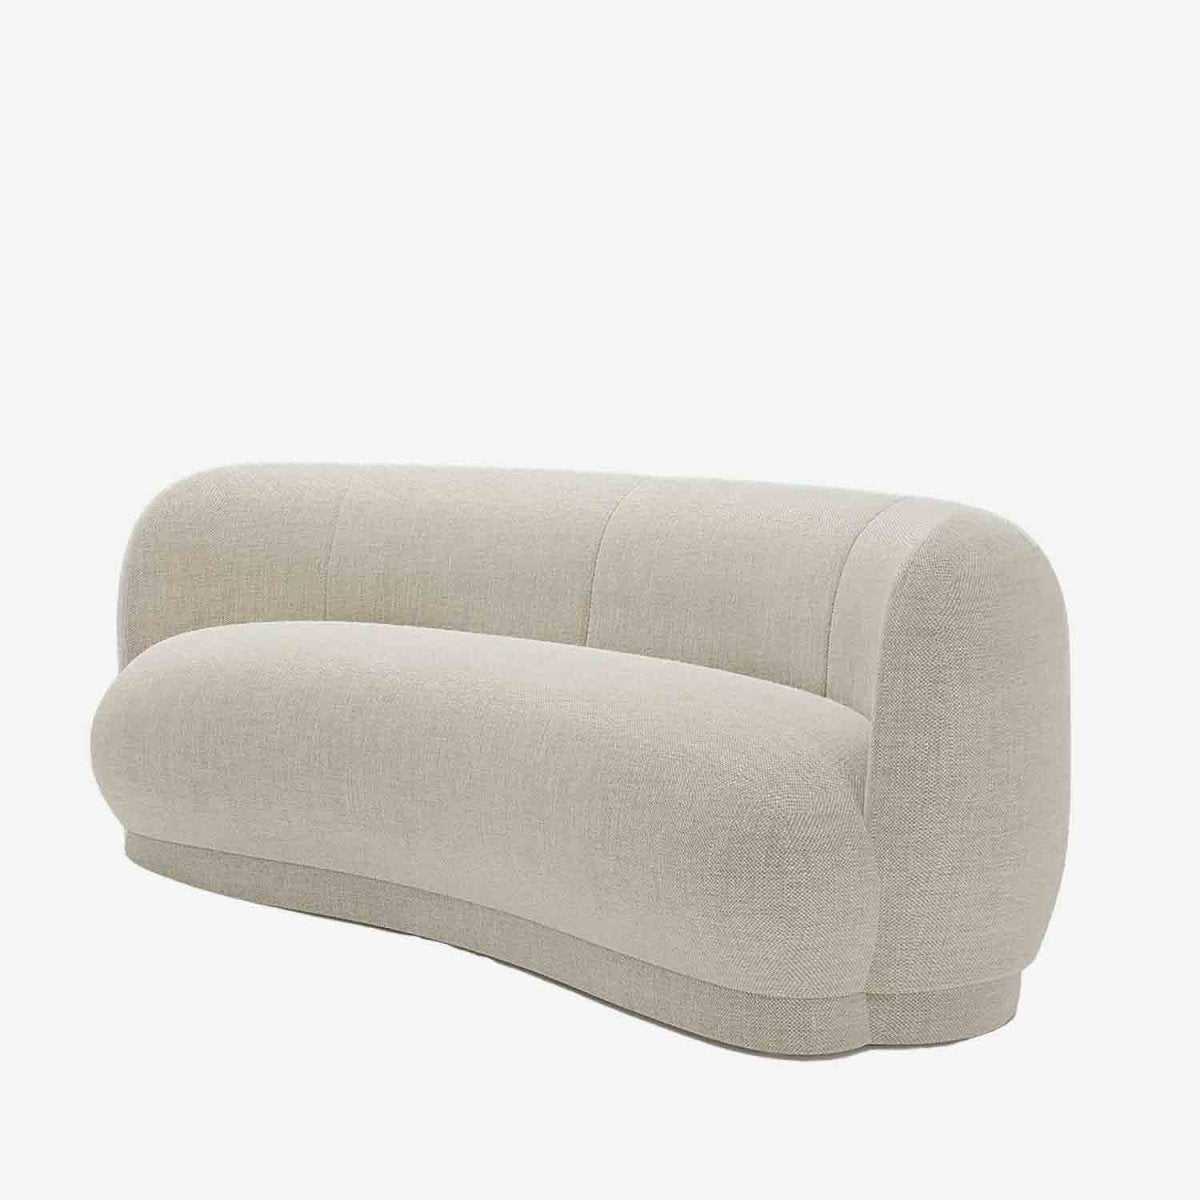 Canapé en forme de haricot 2 places design tissu beige - Potiron Paris, les canapés design de qualité pas chers